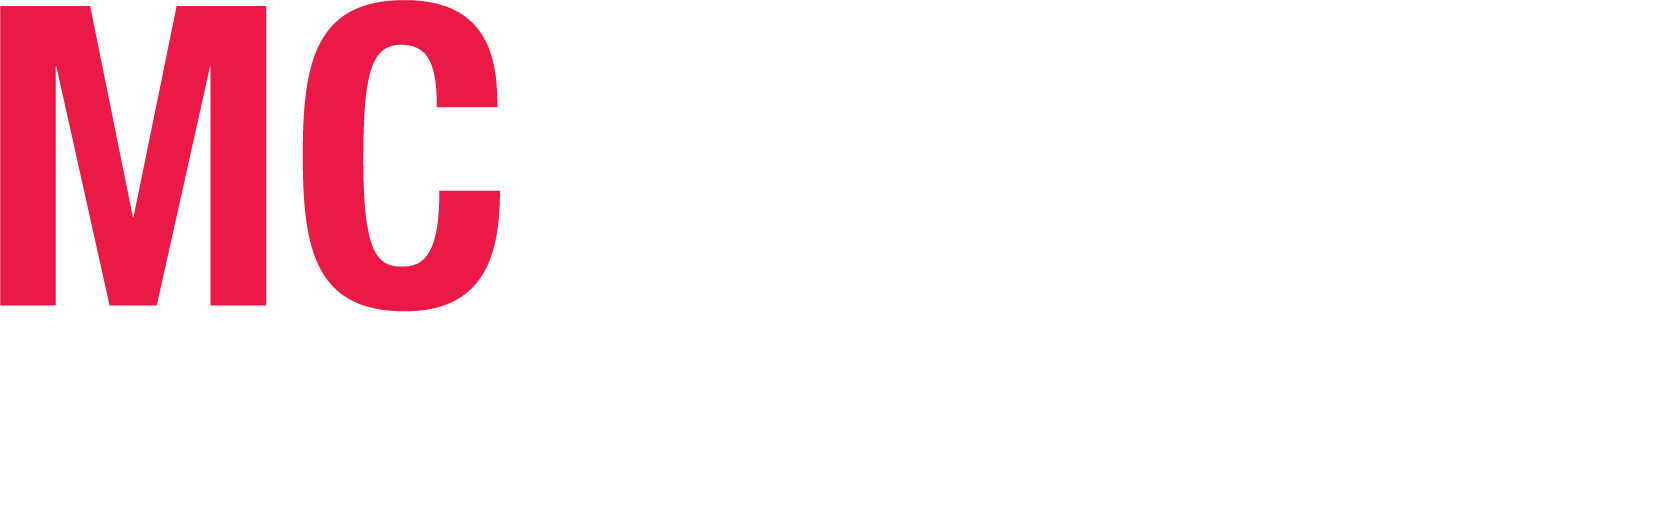 MC Machinery 